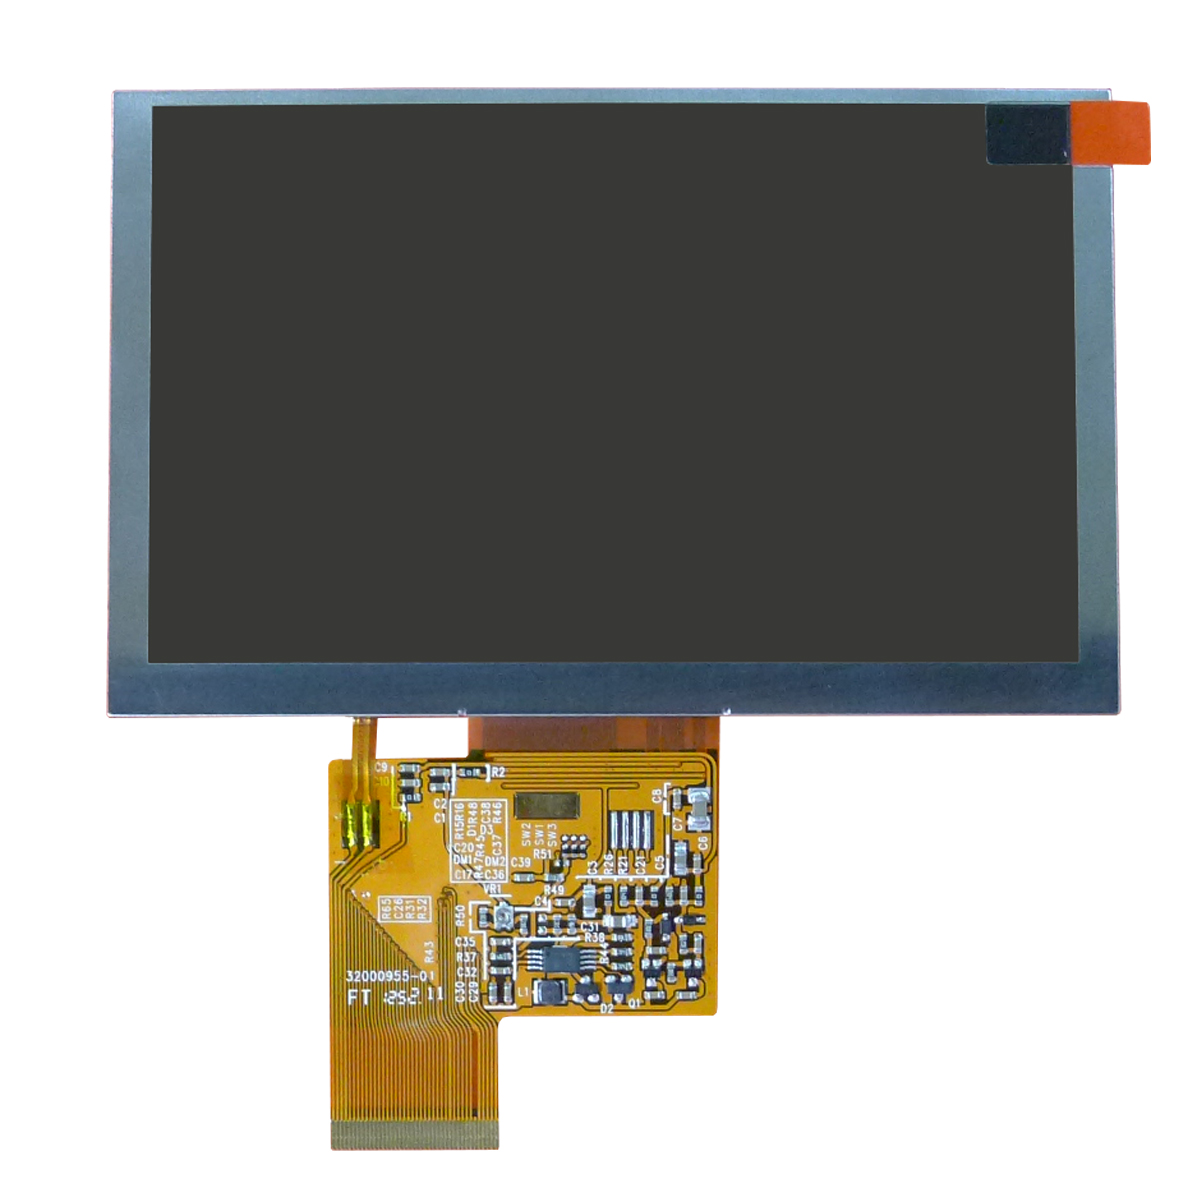 供应夏普5.7寸液晶屏 LQ057Q3DC12 夏普工控液晶屏